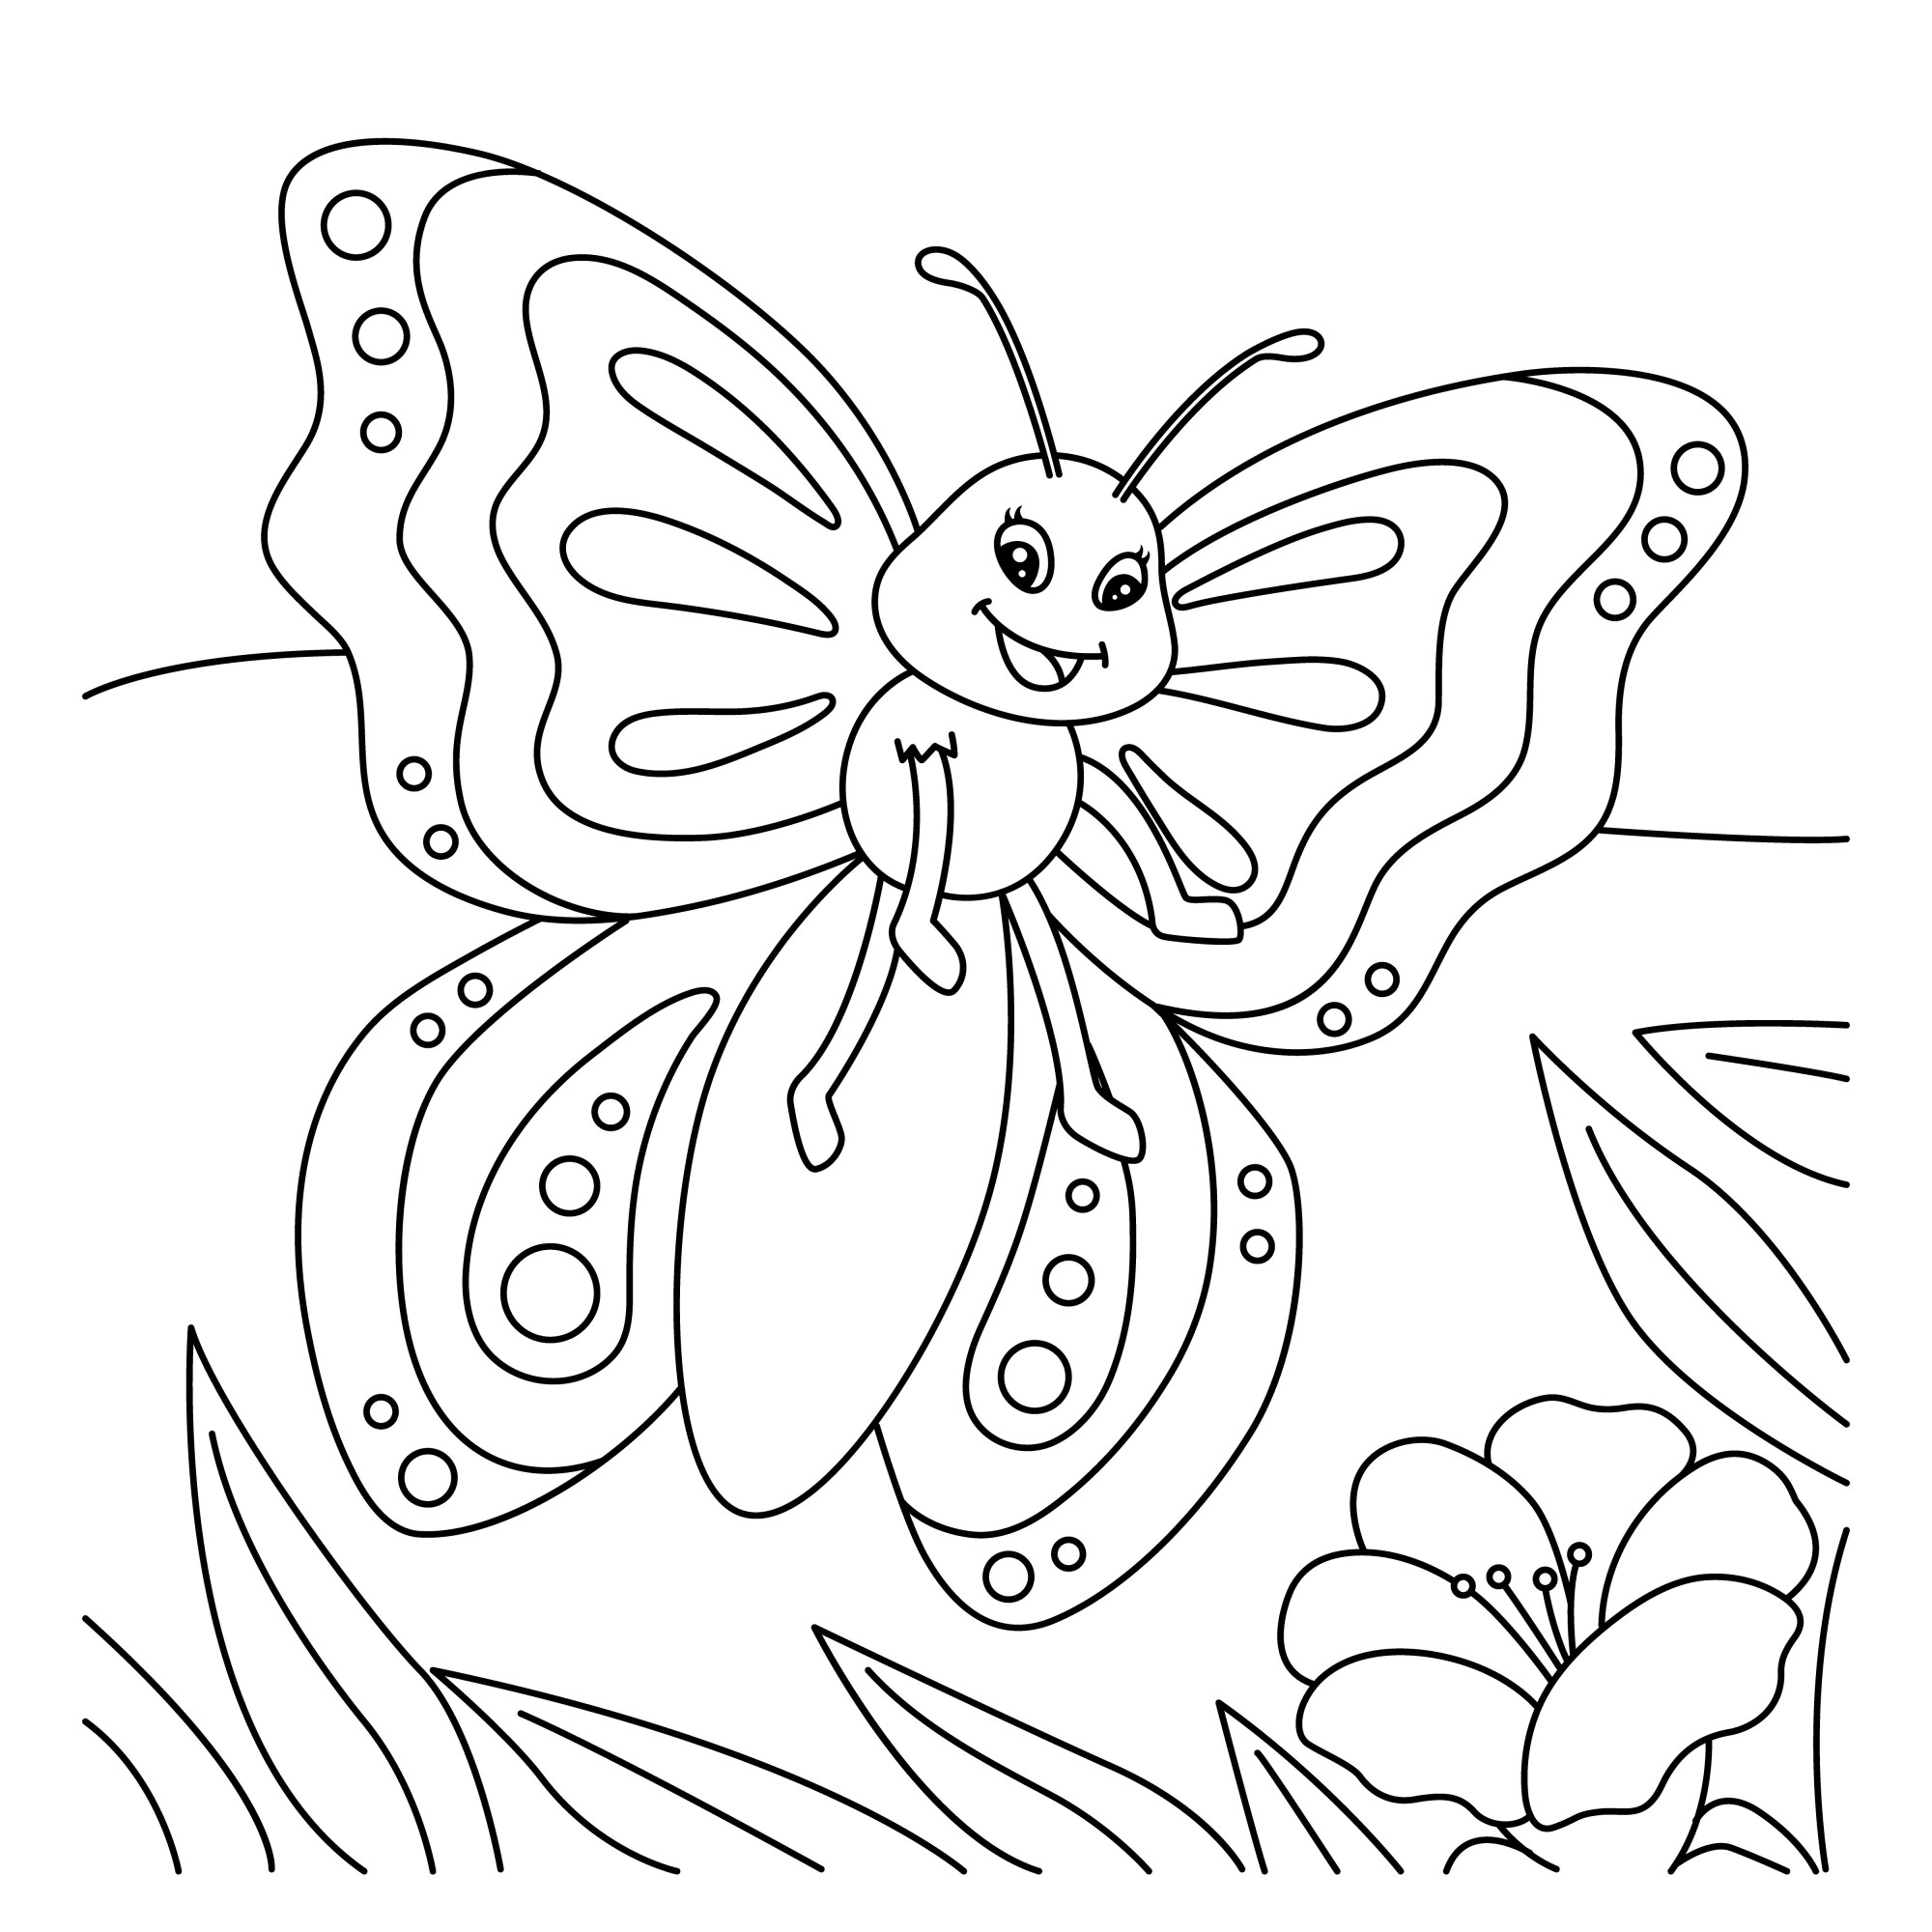 Раскраска для детей: мультяшная бабочка с радостным лицом летит над цветком